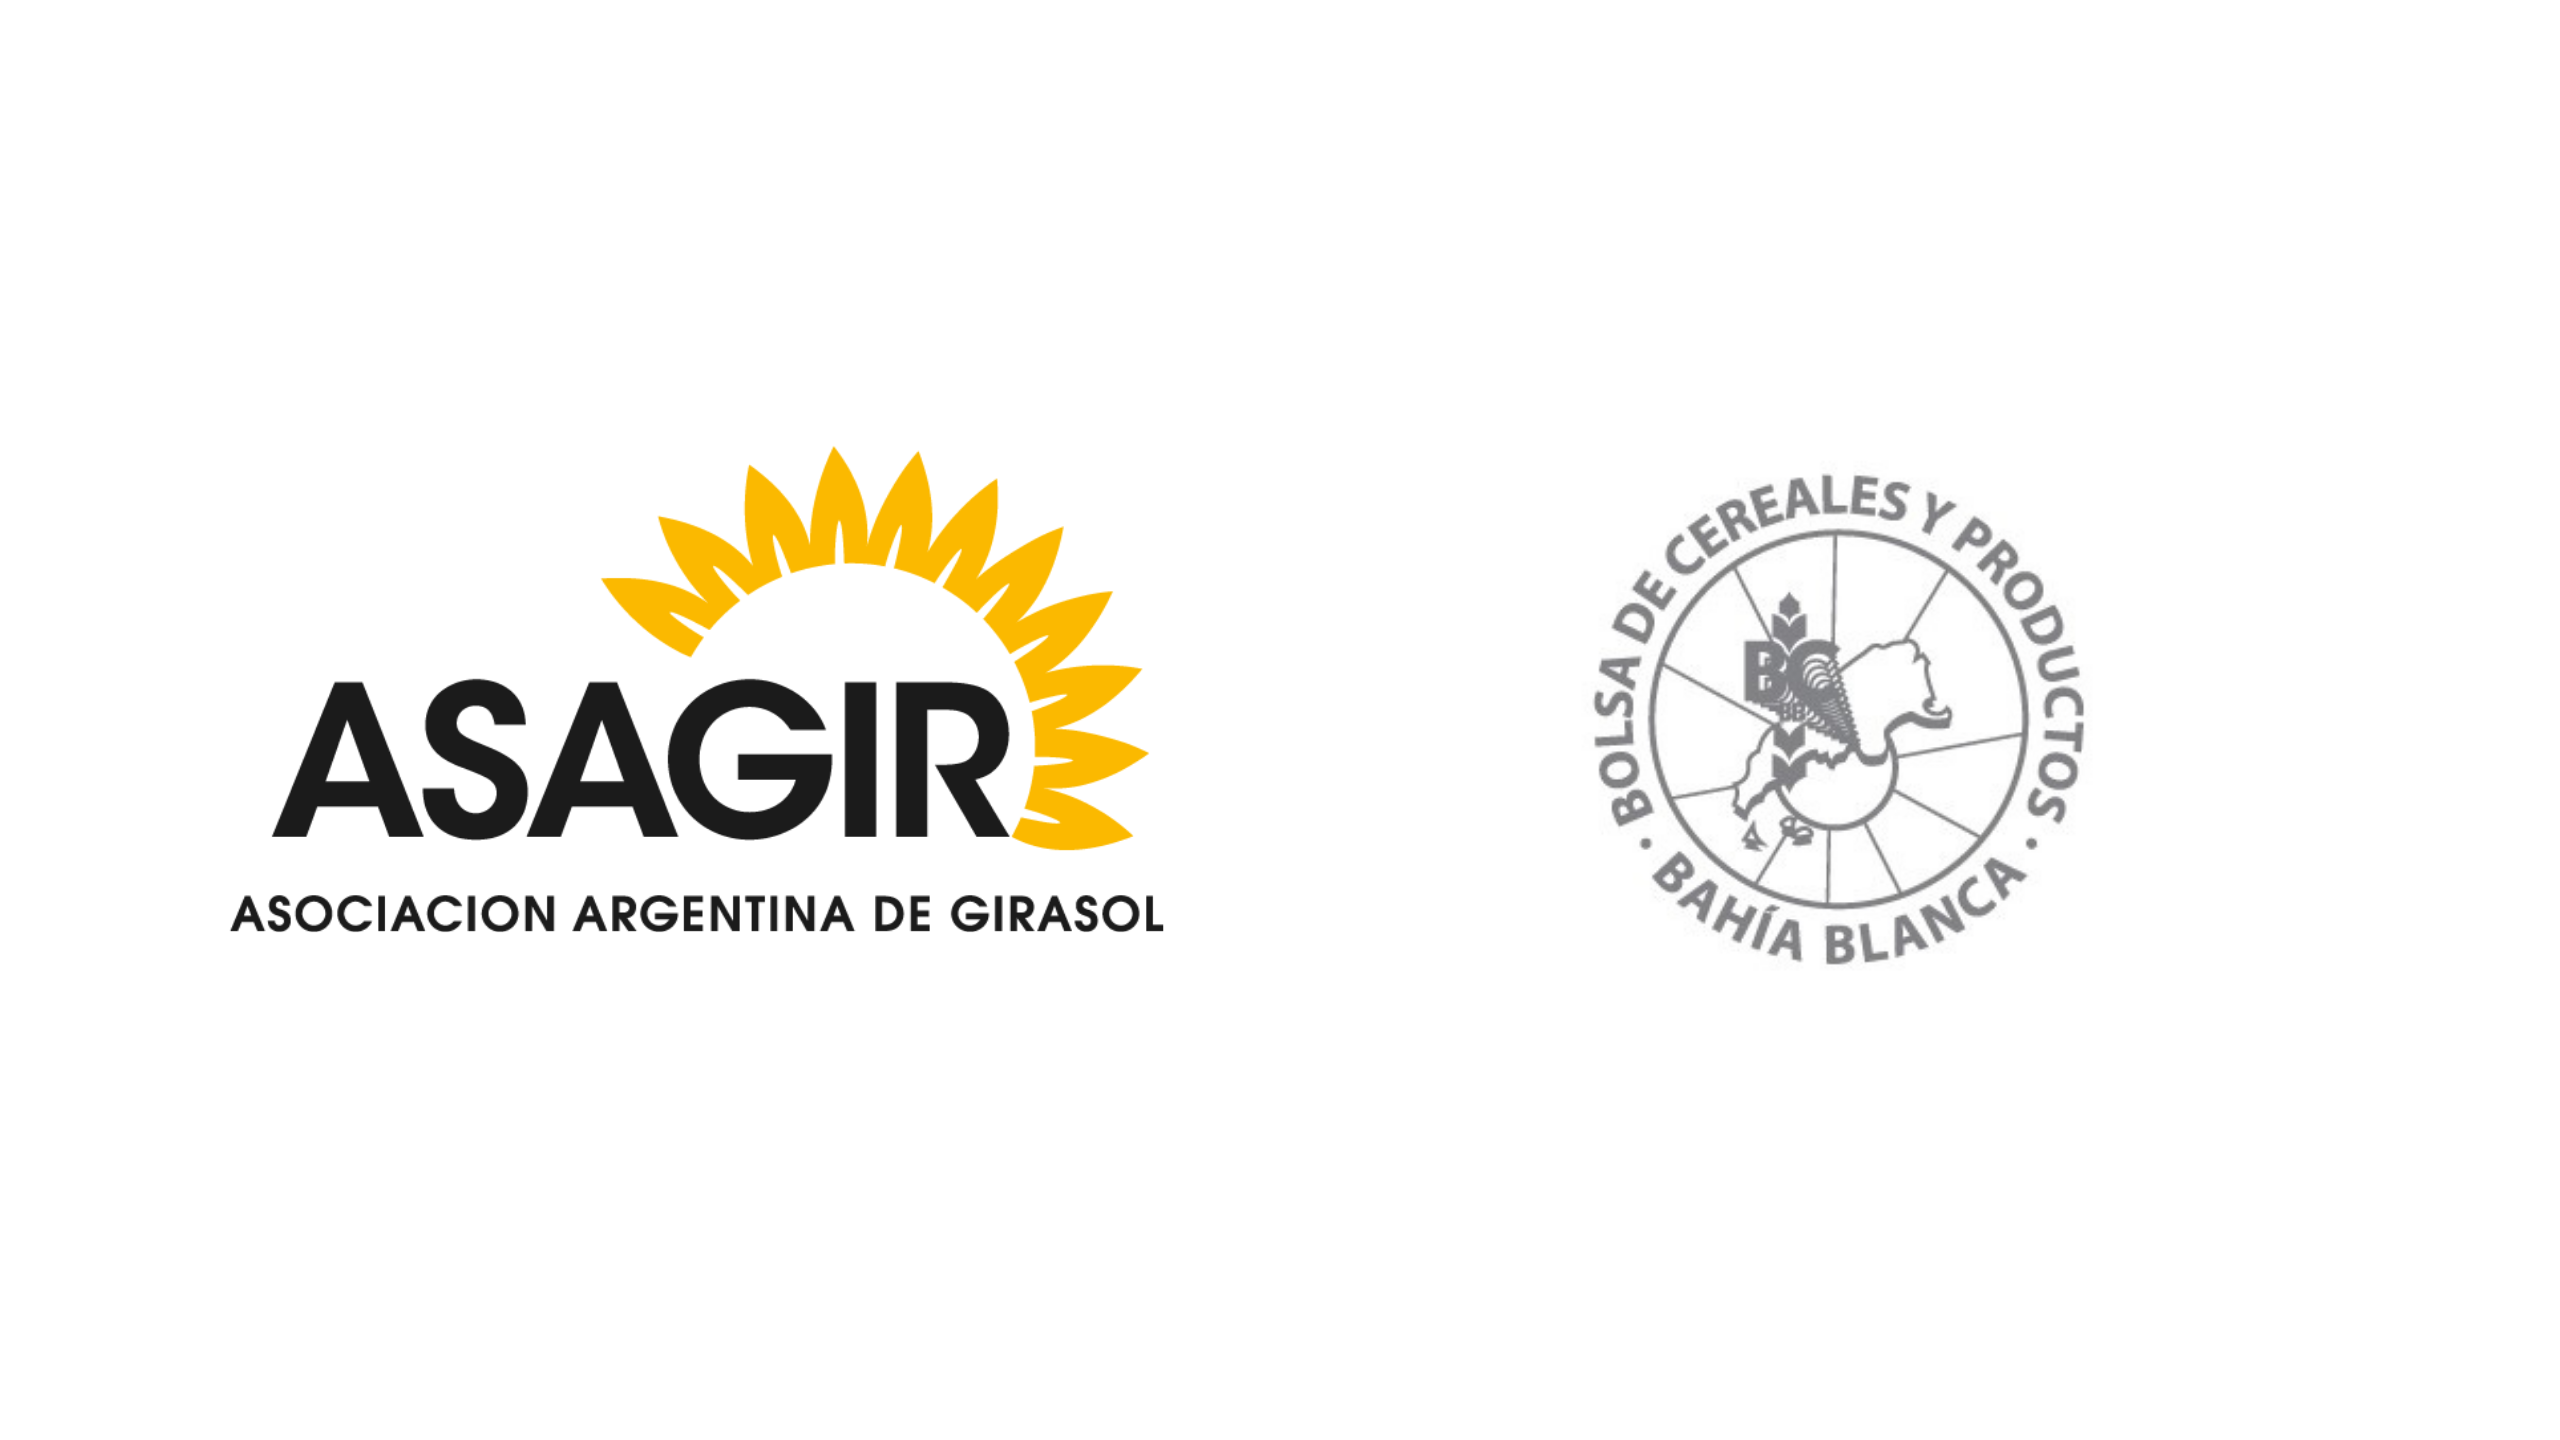 Actualizacin de Cosecha de Girasol en el Sur de Buenos Aires; gentileza de la Bolsa de Cereales y Productos de Baha Blanca.